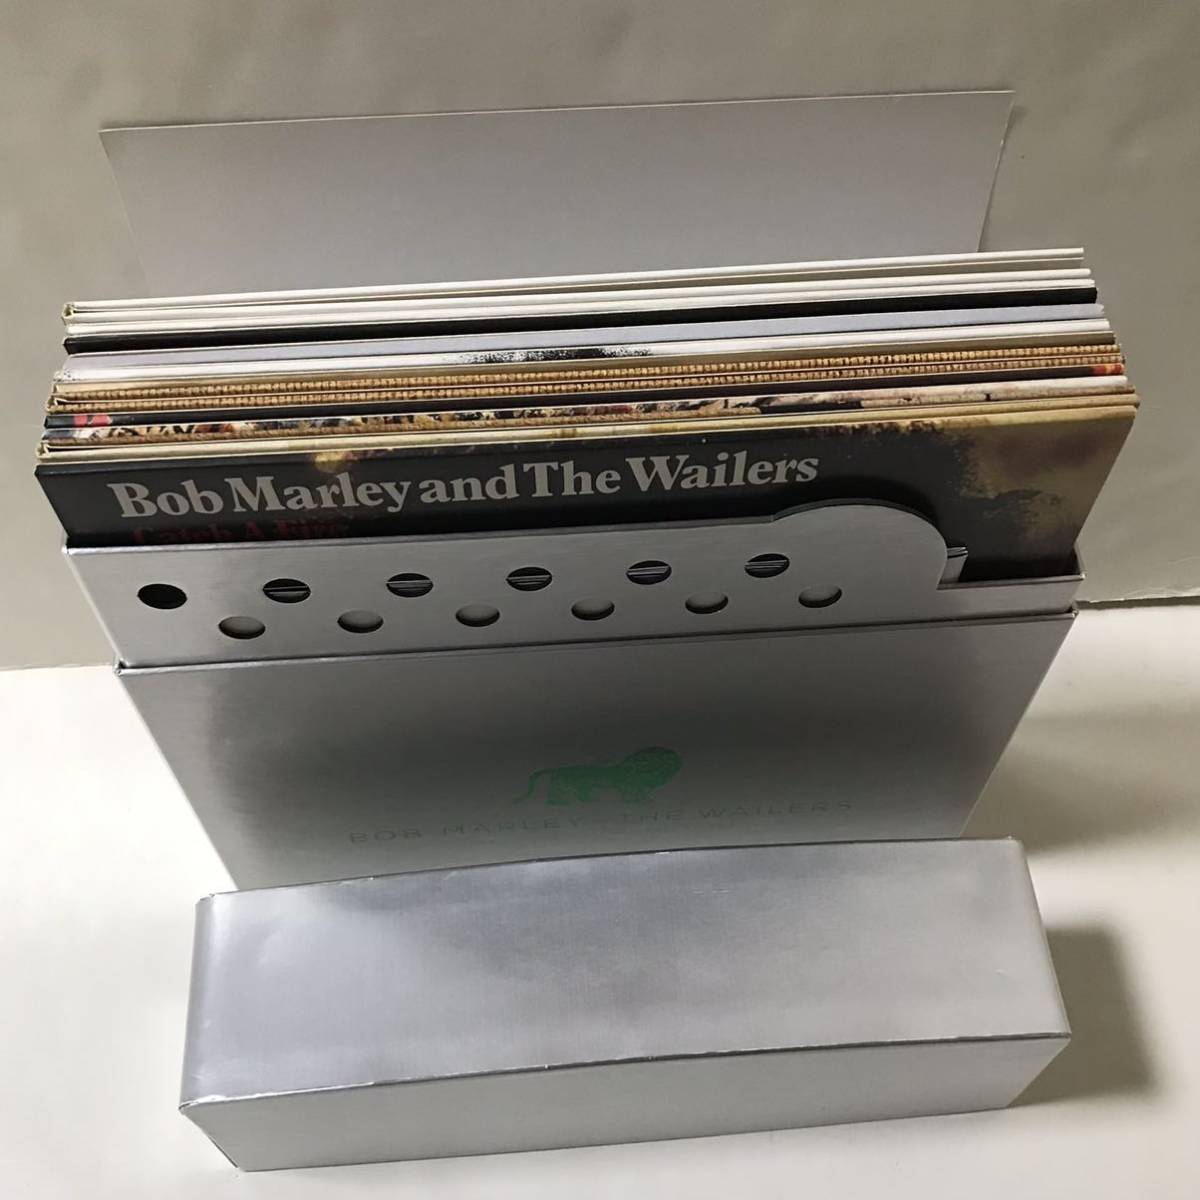  ценный BOB MARLEY & THE WAILERS THE COMPLETE ISLAND RECORDINGS 11 листов комплект LP ограничение box комплект 